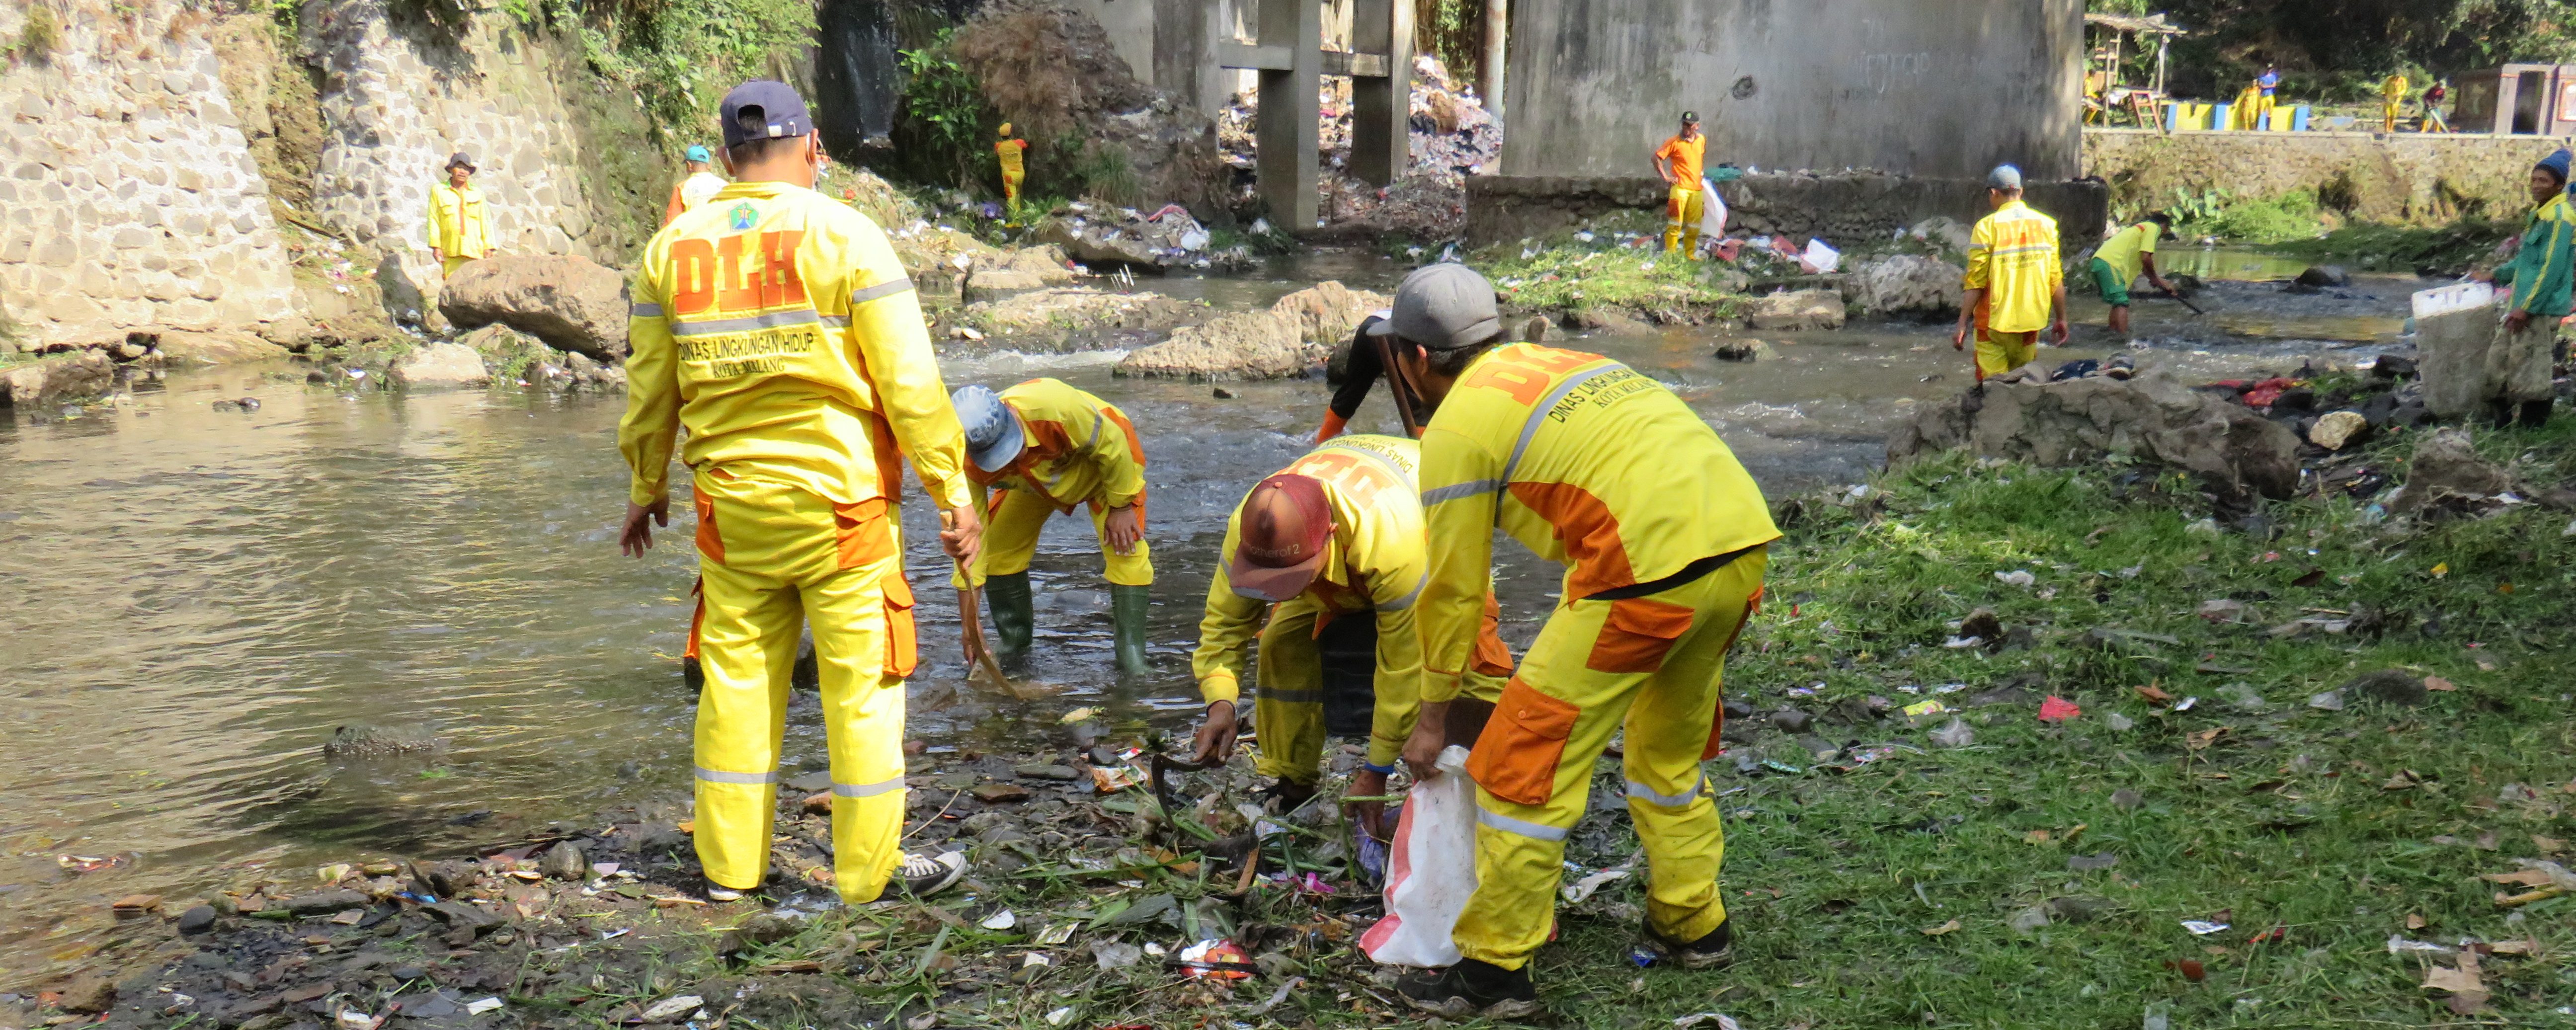 Bersih-bersih sungai muharto 19 Juni 2019